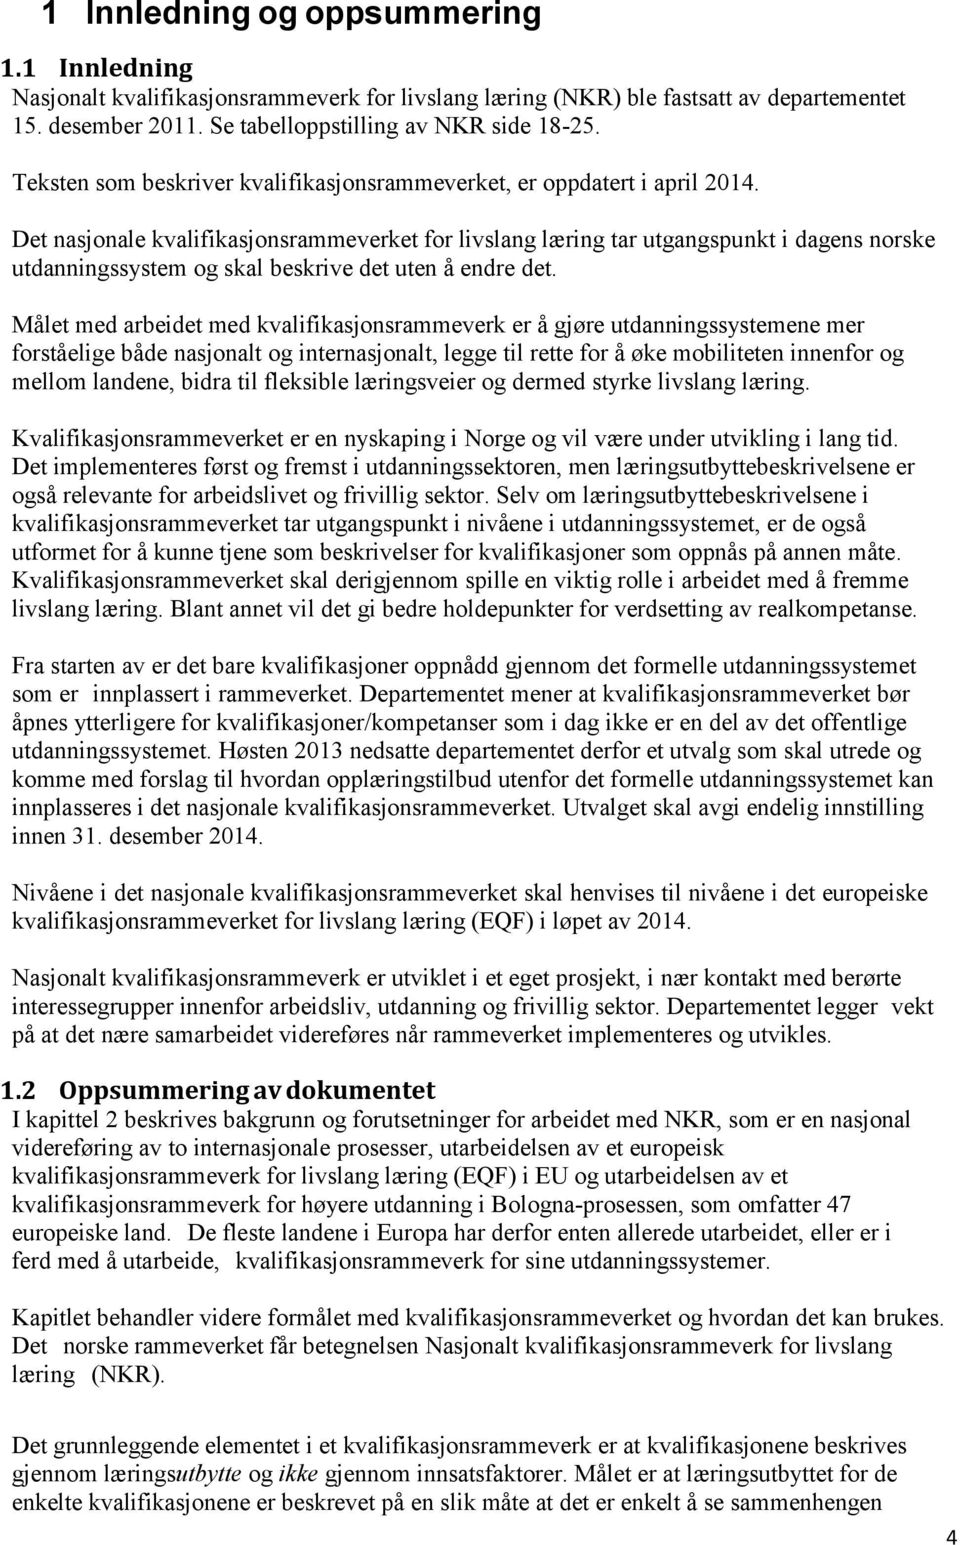 Det nasjonale kvalifikasjonsrammeverket for livslang læring tar utgangspunkt i dagens norske utdanningssystem og skal beskrive det uten å endre det.